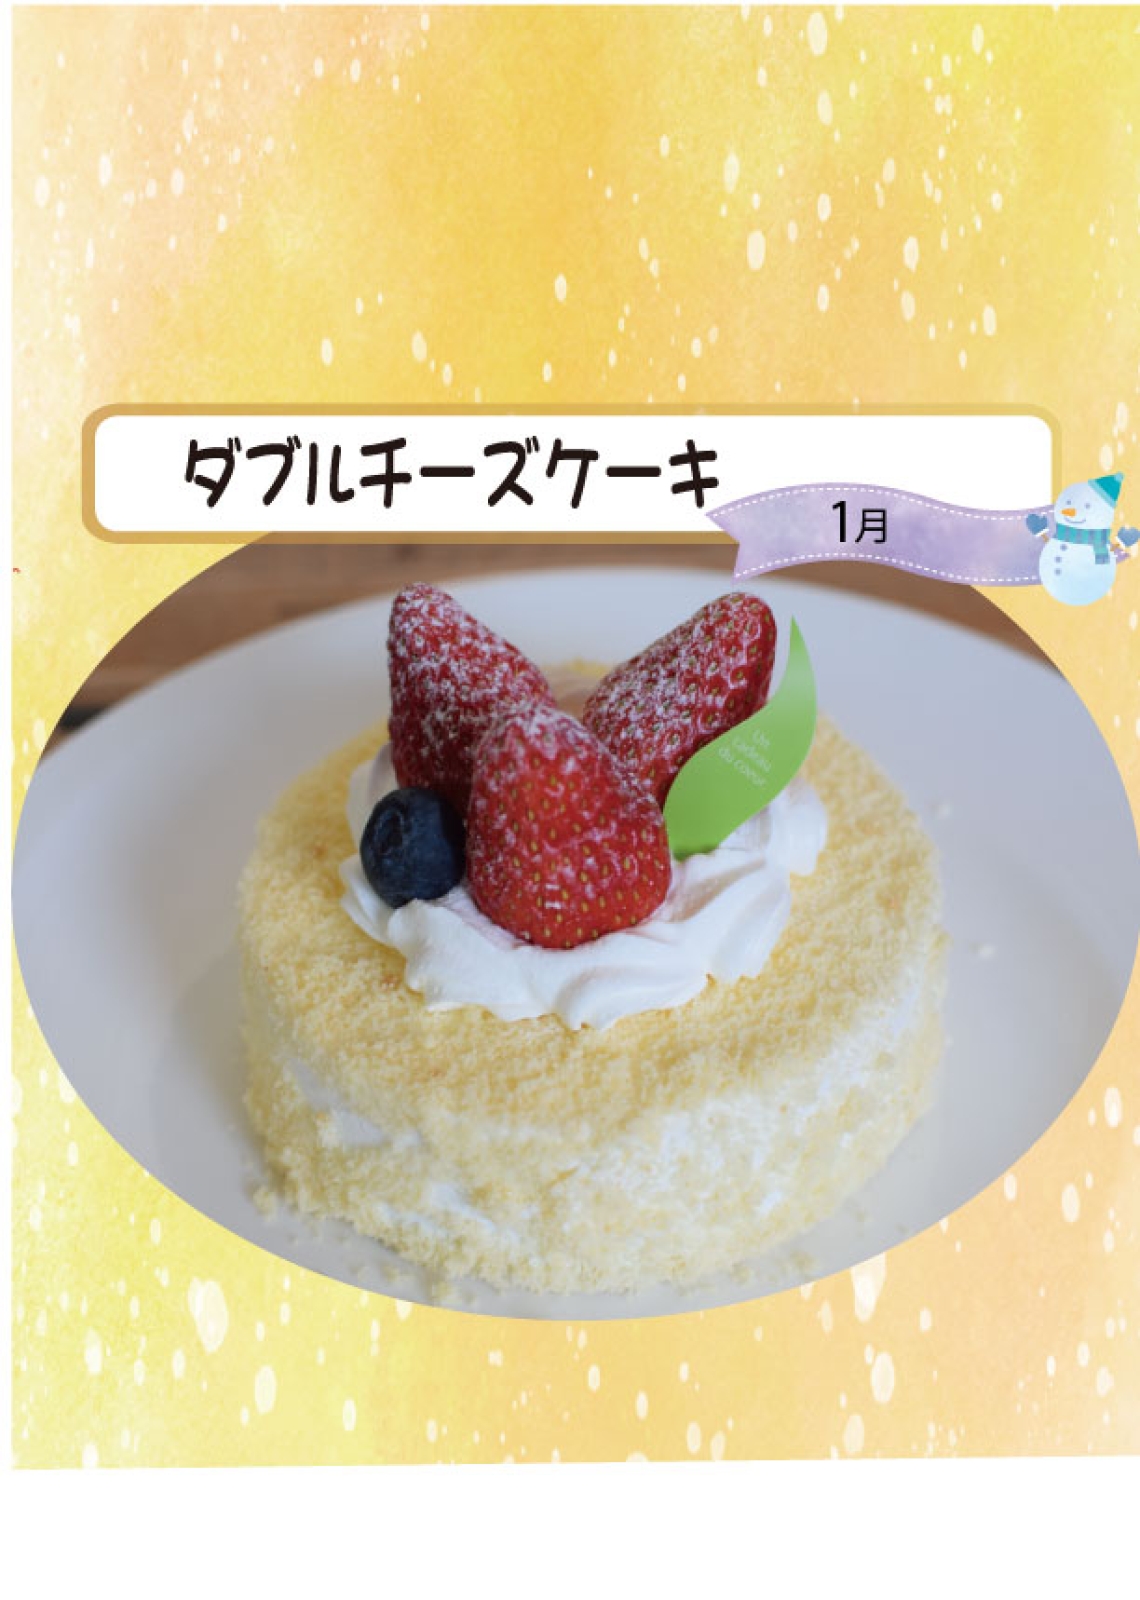 【本店・300台限定】1月のチーズケーキの日